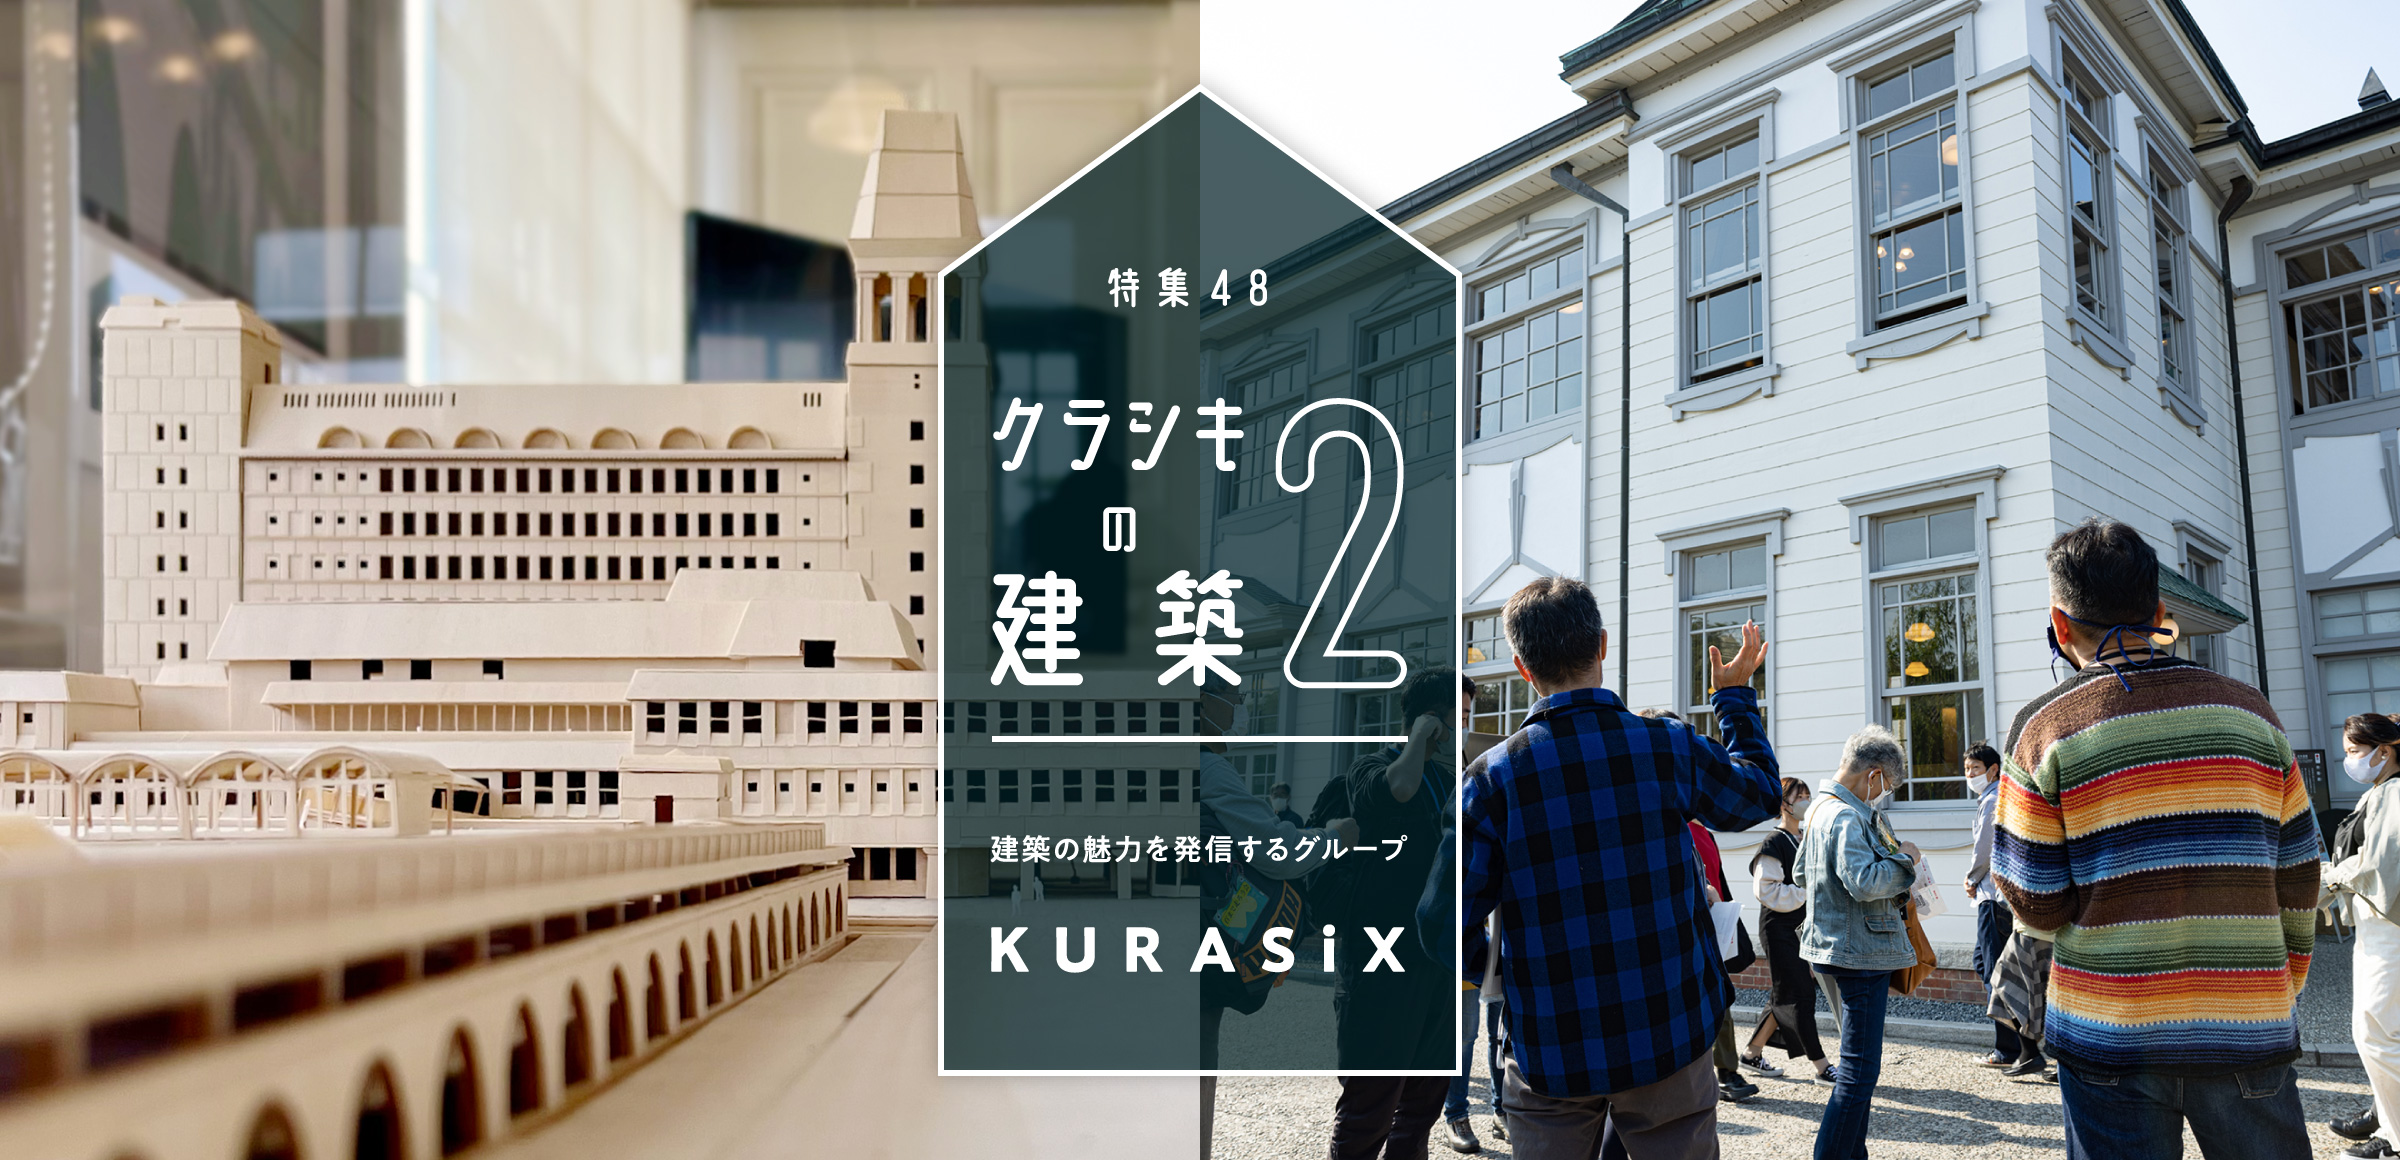 特集48 クラシキの建築2 - 建築の魅力を発信するグループ KURASiX -